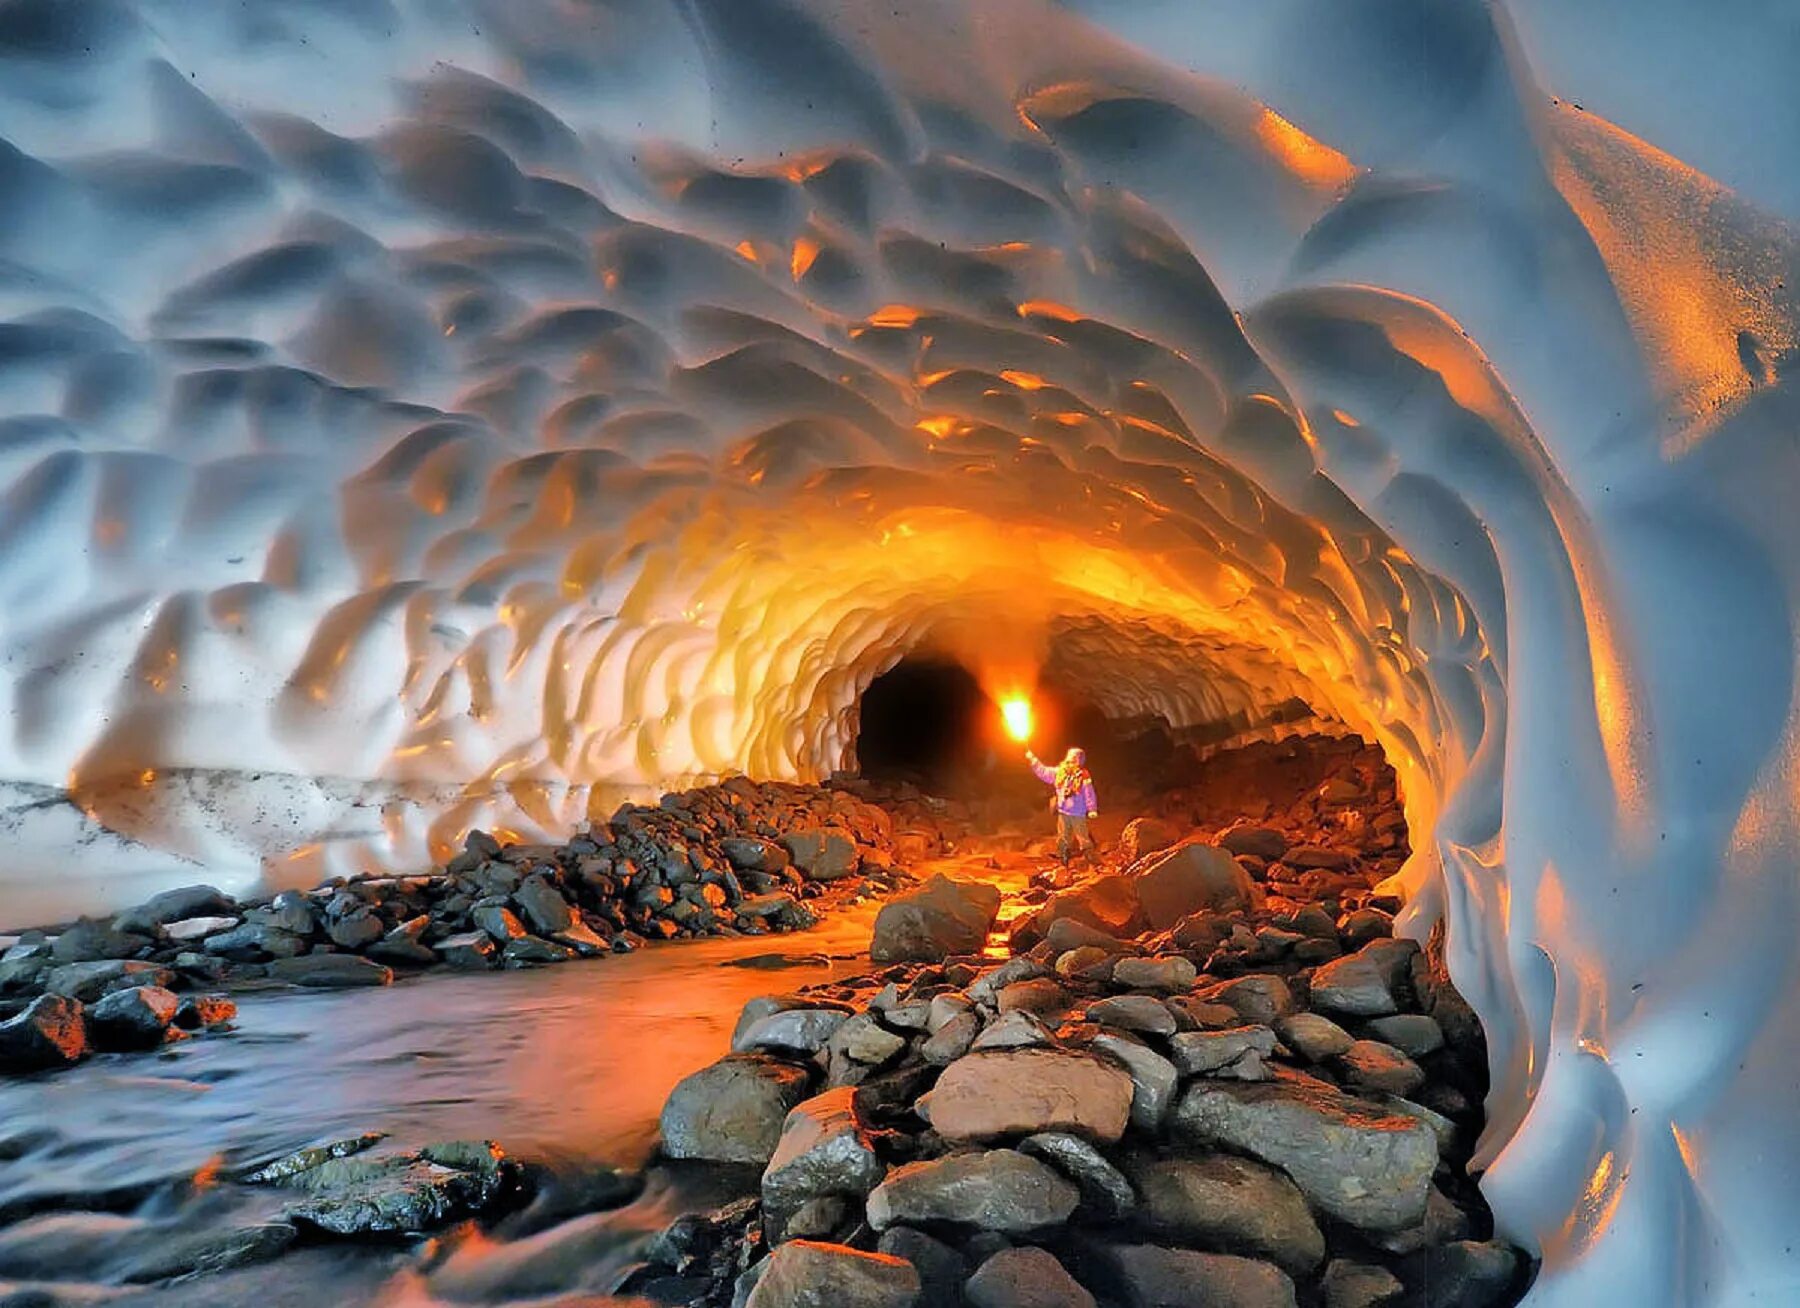 Невероятно горячий. Лавовые пещеры вулкана Горелый. Вулкан Мутновский Ледяная пещера. Кунгурская Ледяная пещера. Лавовые пещеры Камчатка.